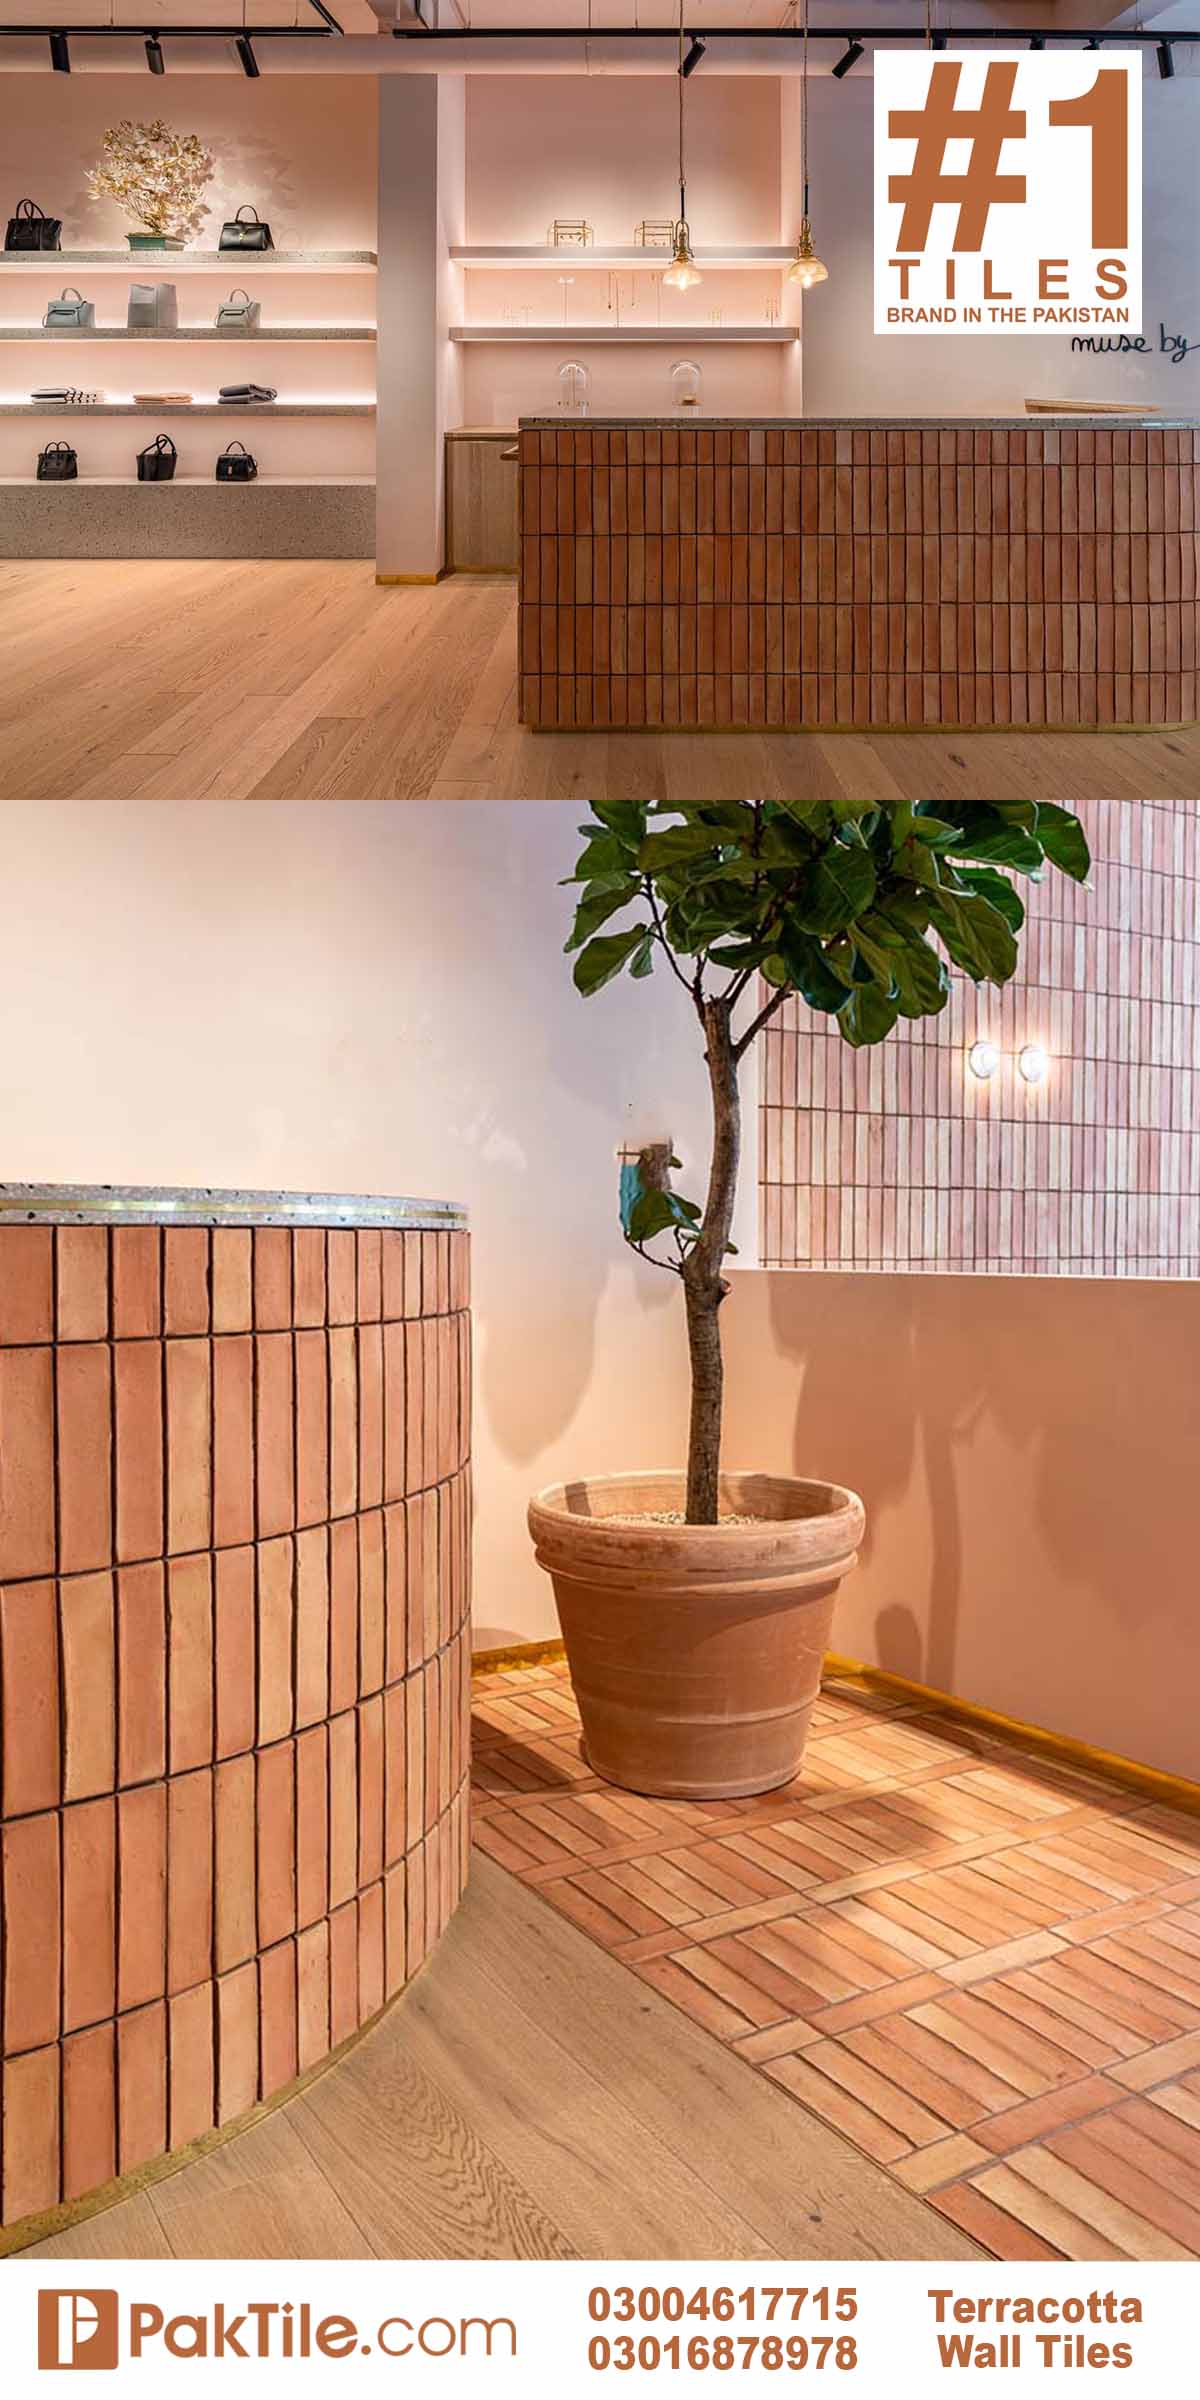 Indoor brick wall tile design